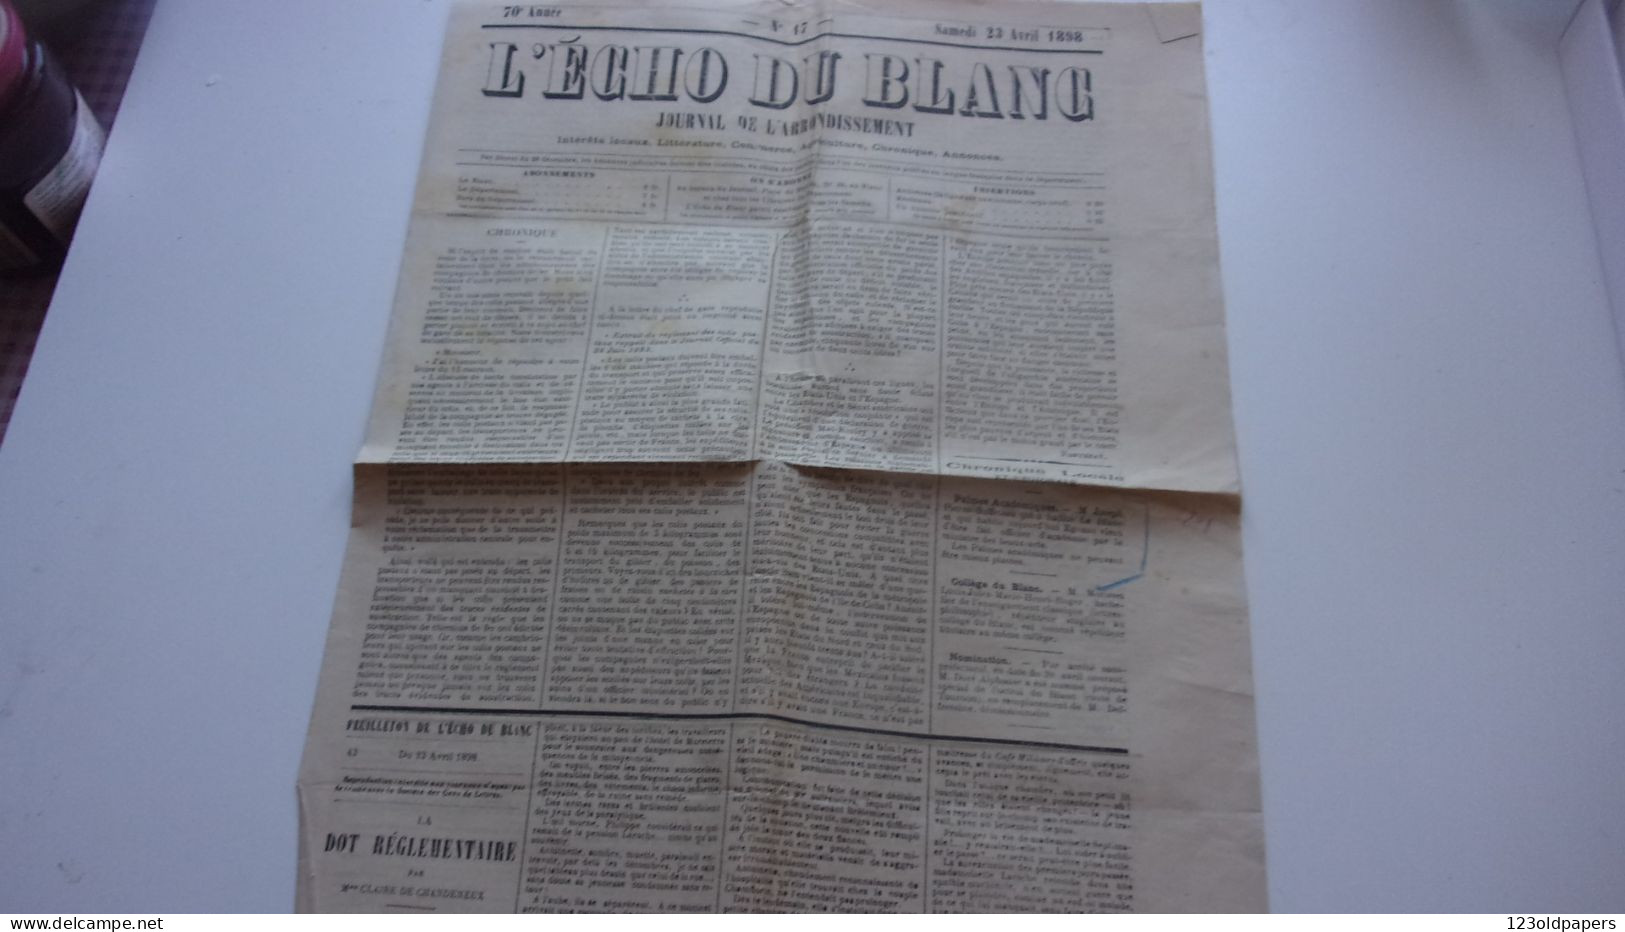 L ECHO DU BLANC INDRE 23 AVRIL 1898 JOURNAL DE L ARRONDISSEMENT - Historische Documenten